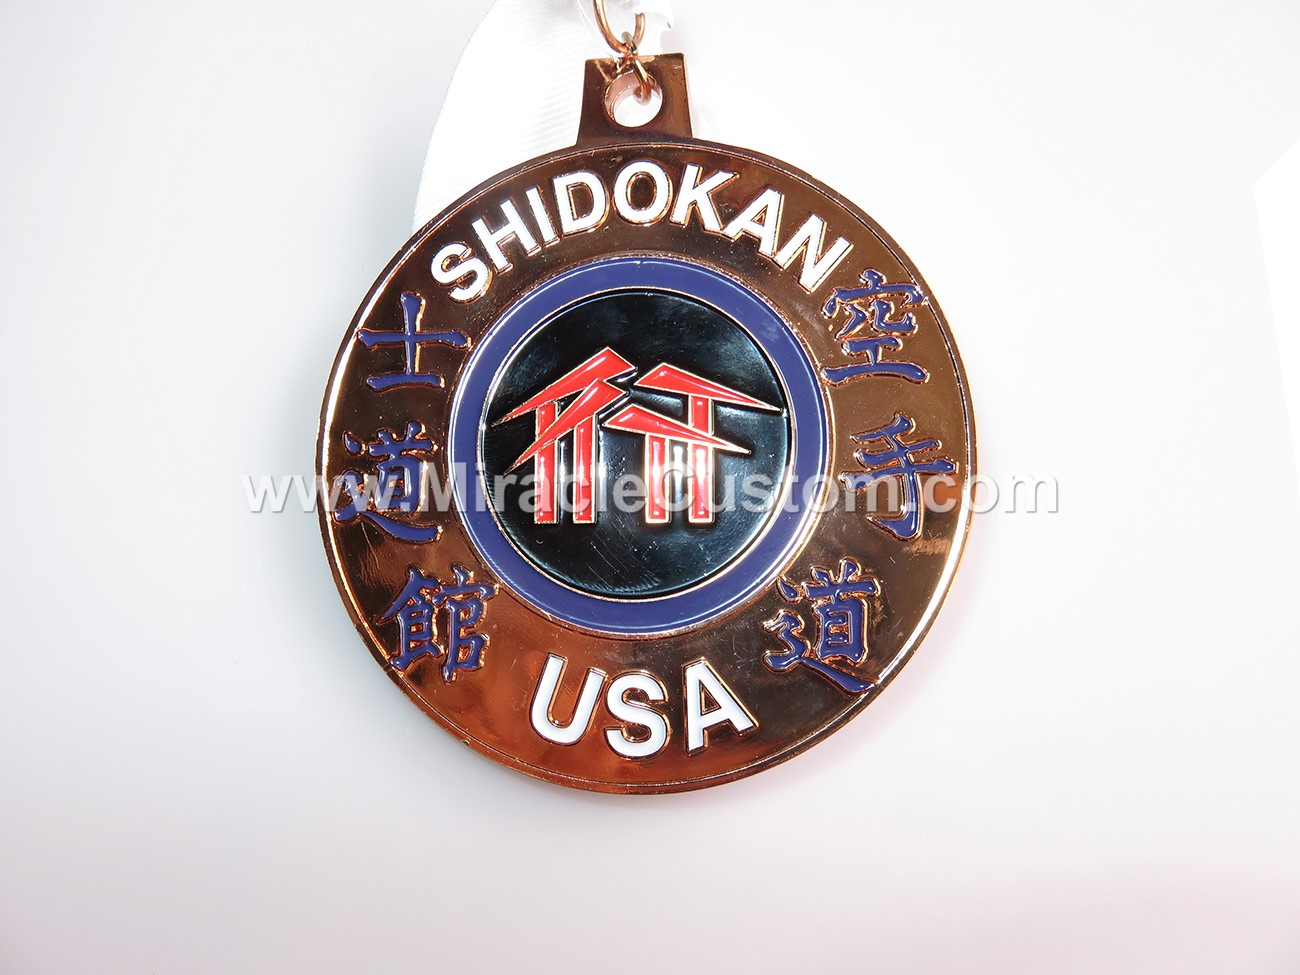 custom shidokan medals